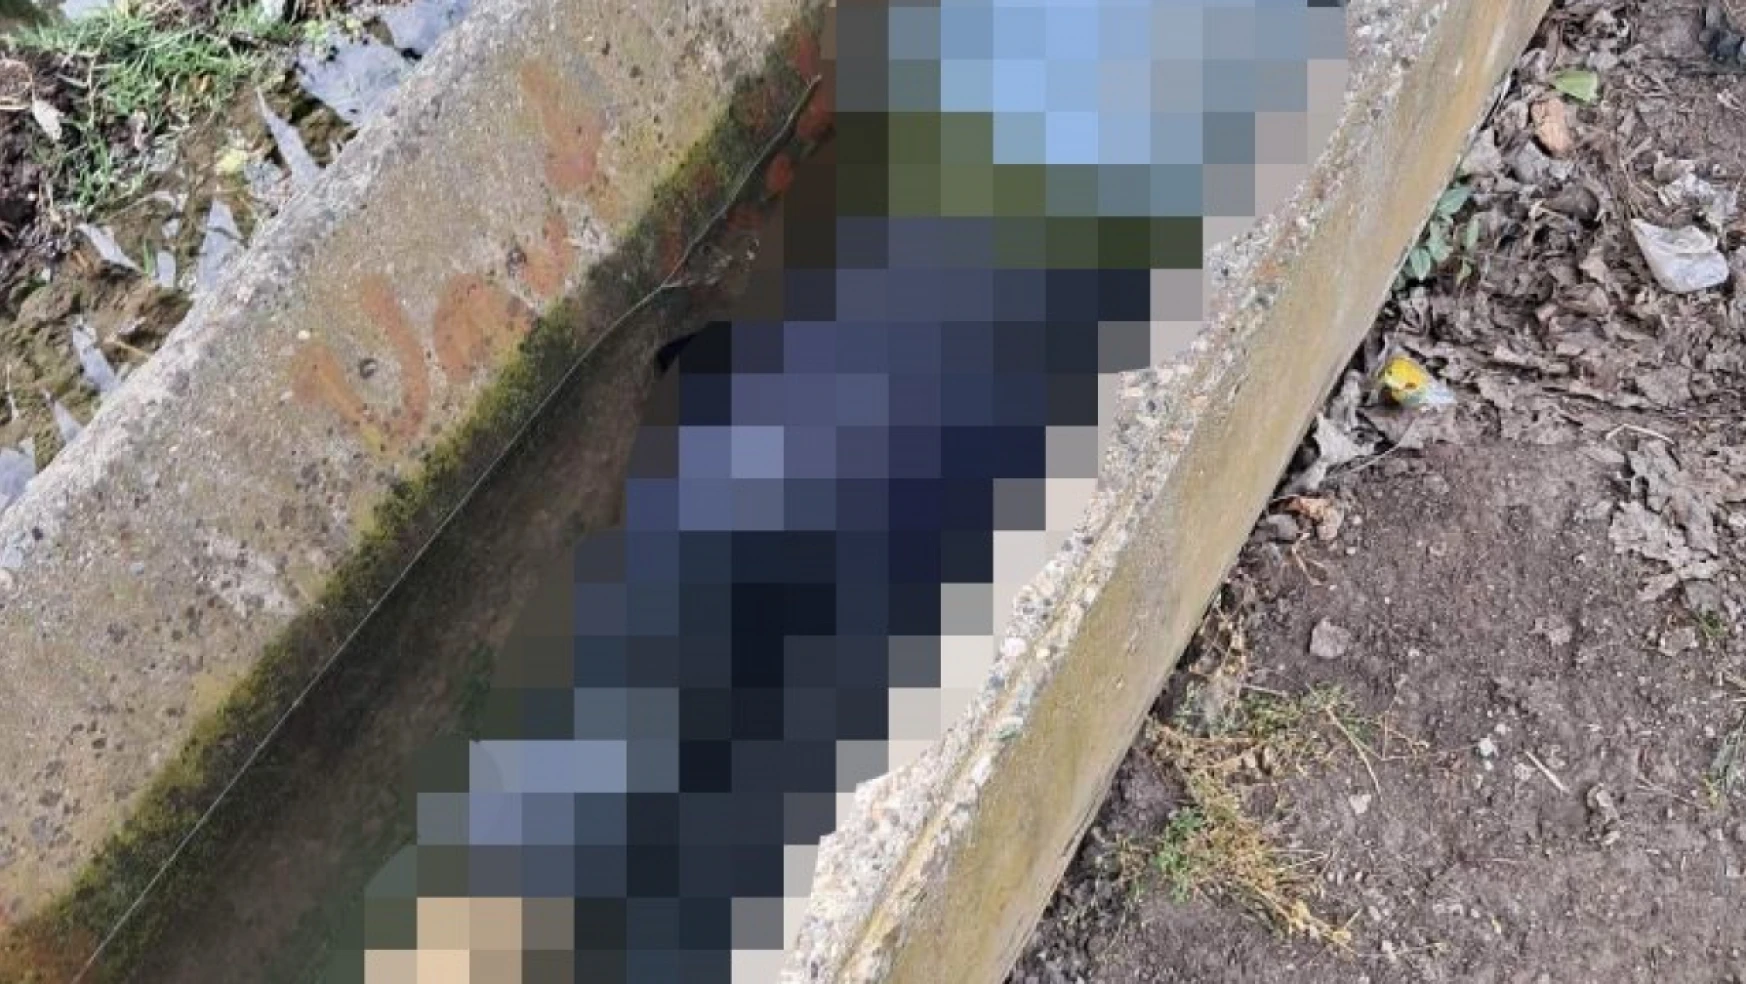 Adana'da sulama kanalında kadın cesedi bulundu